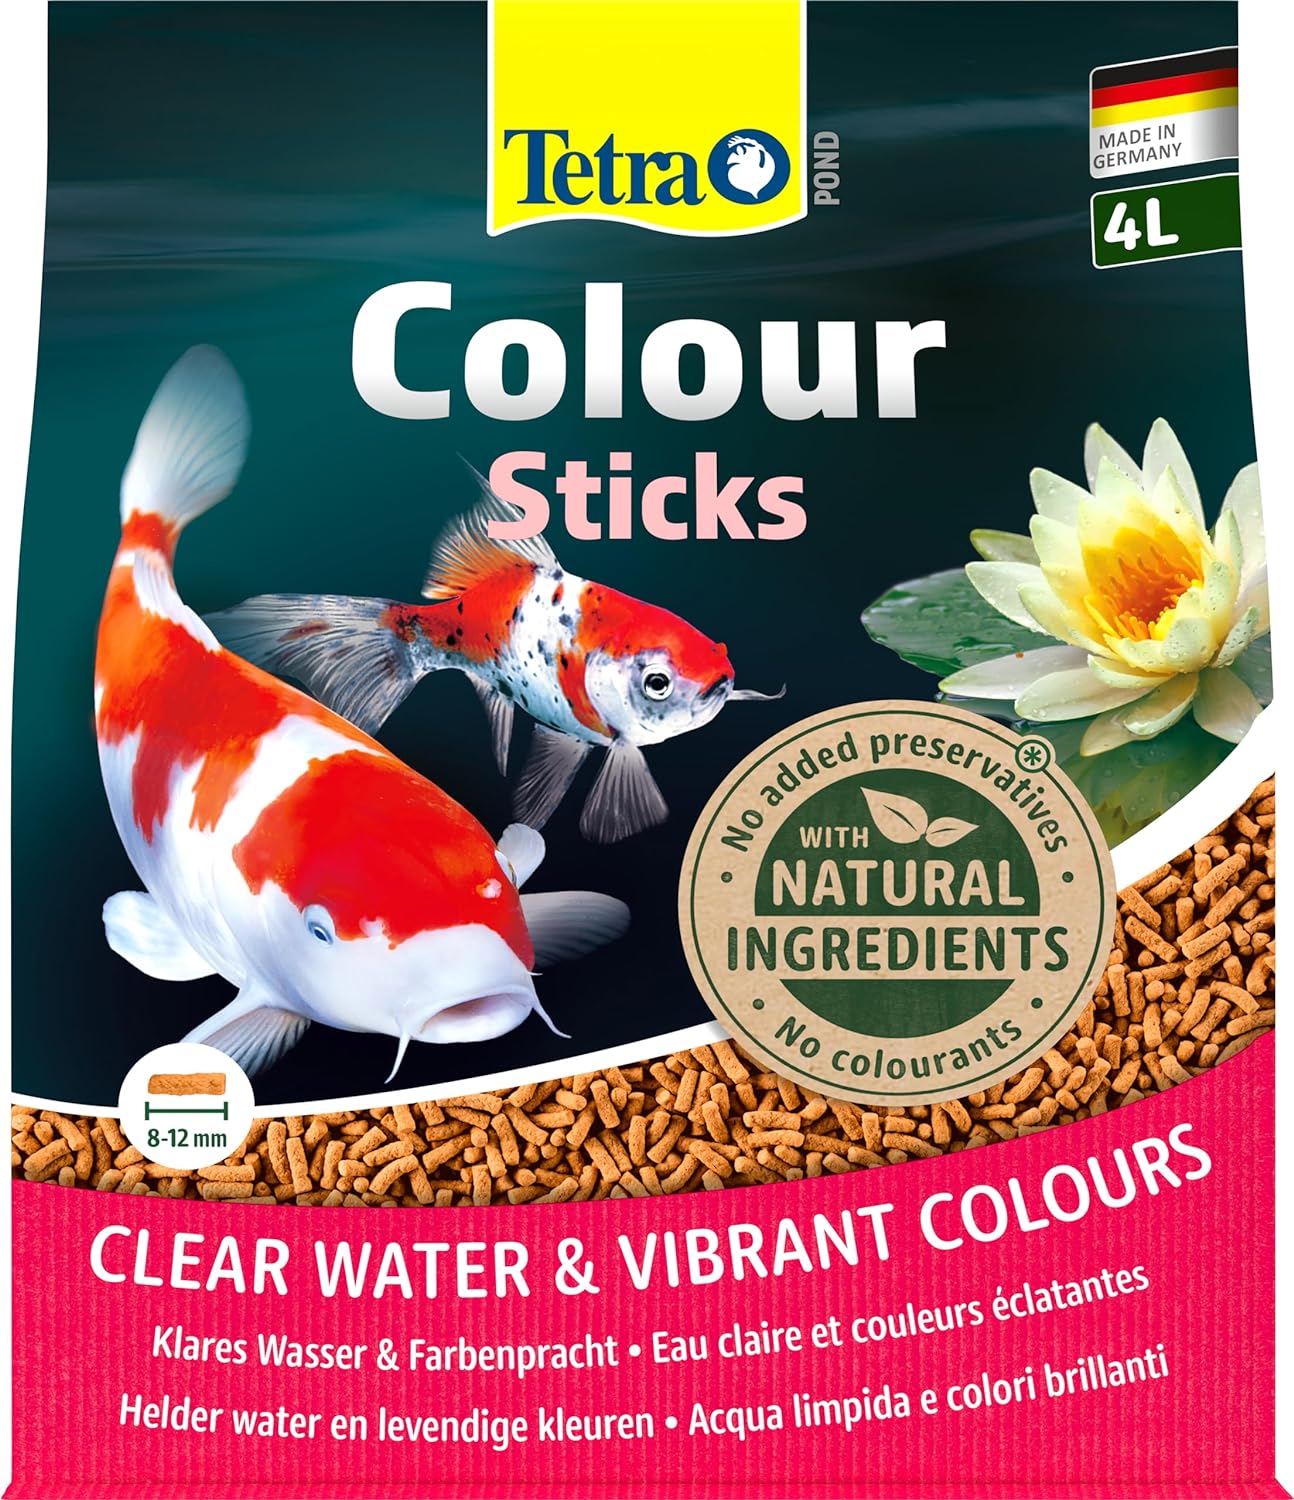 tetra-pond-colour-sticks-4l-aliment-en-sticks-qui-renforce-les-couleurs-rouge-orange-et-jaune-des-poissons